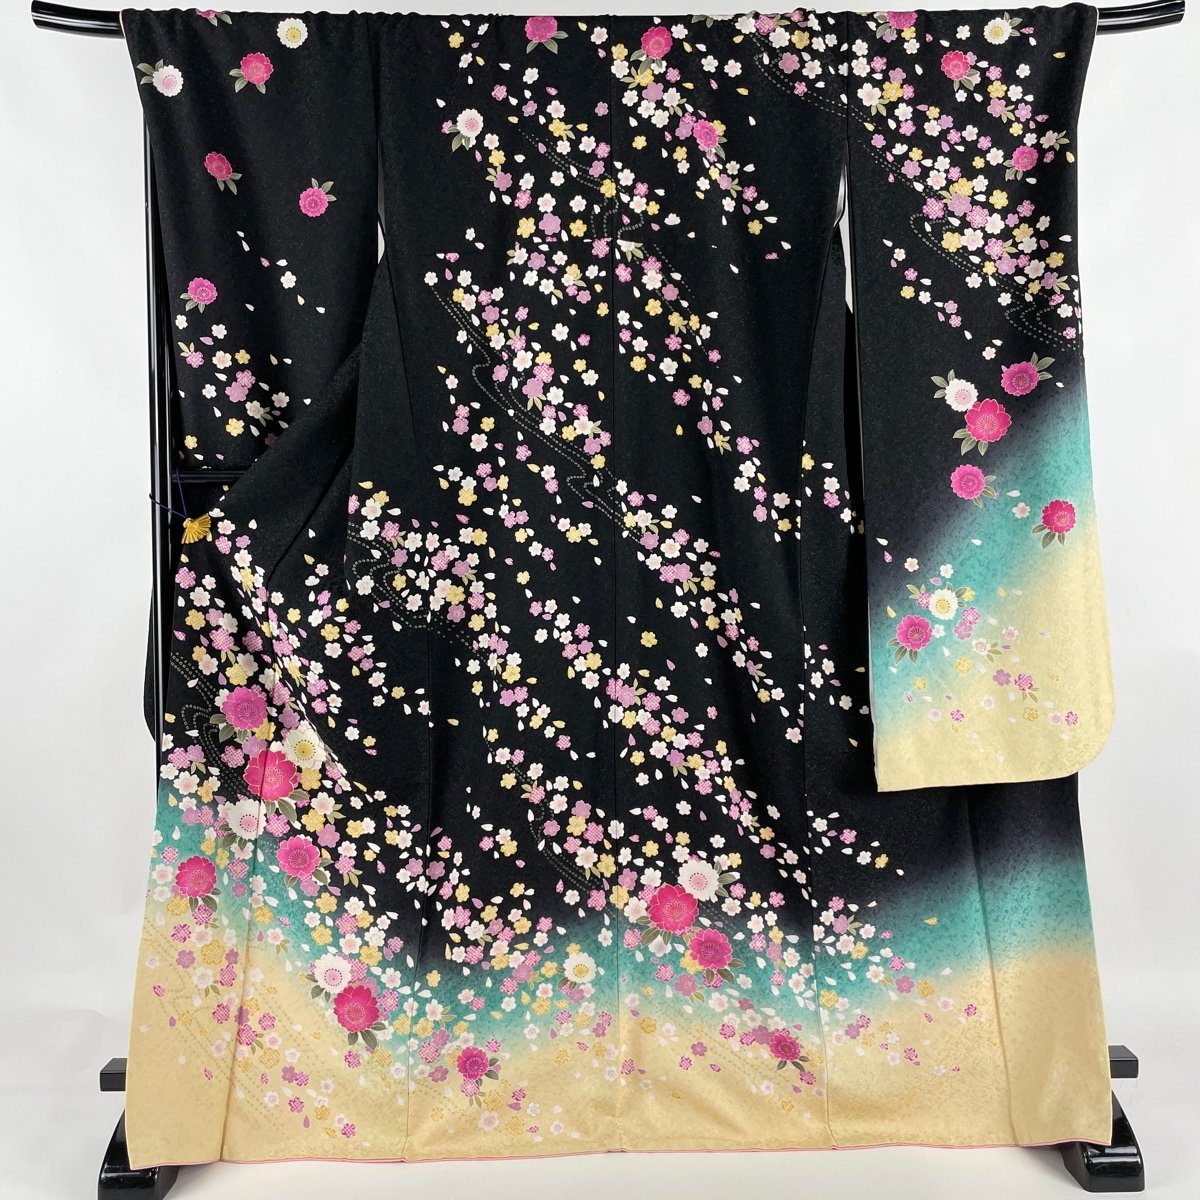 振袖 身丈170.5cm 裄丈72cm L 袷 桜 桜の花びら 金通し 箔 黒 正絹 美品 逸品